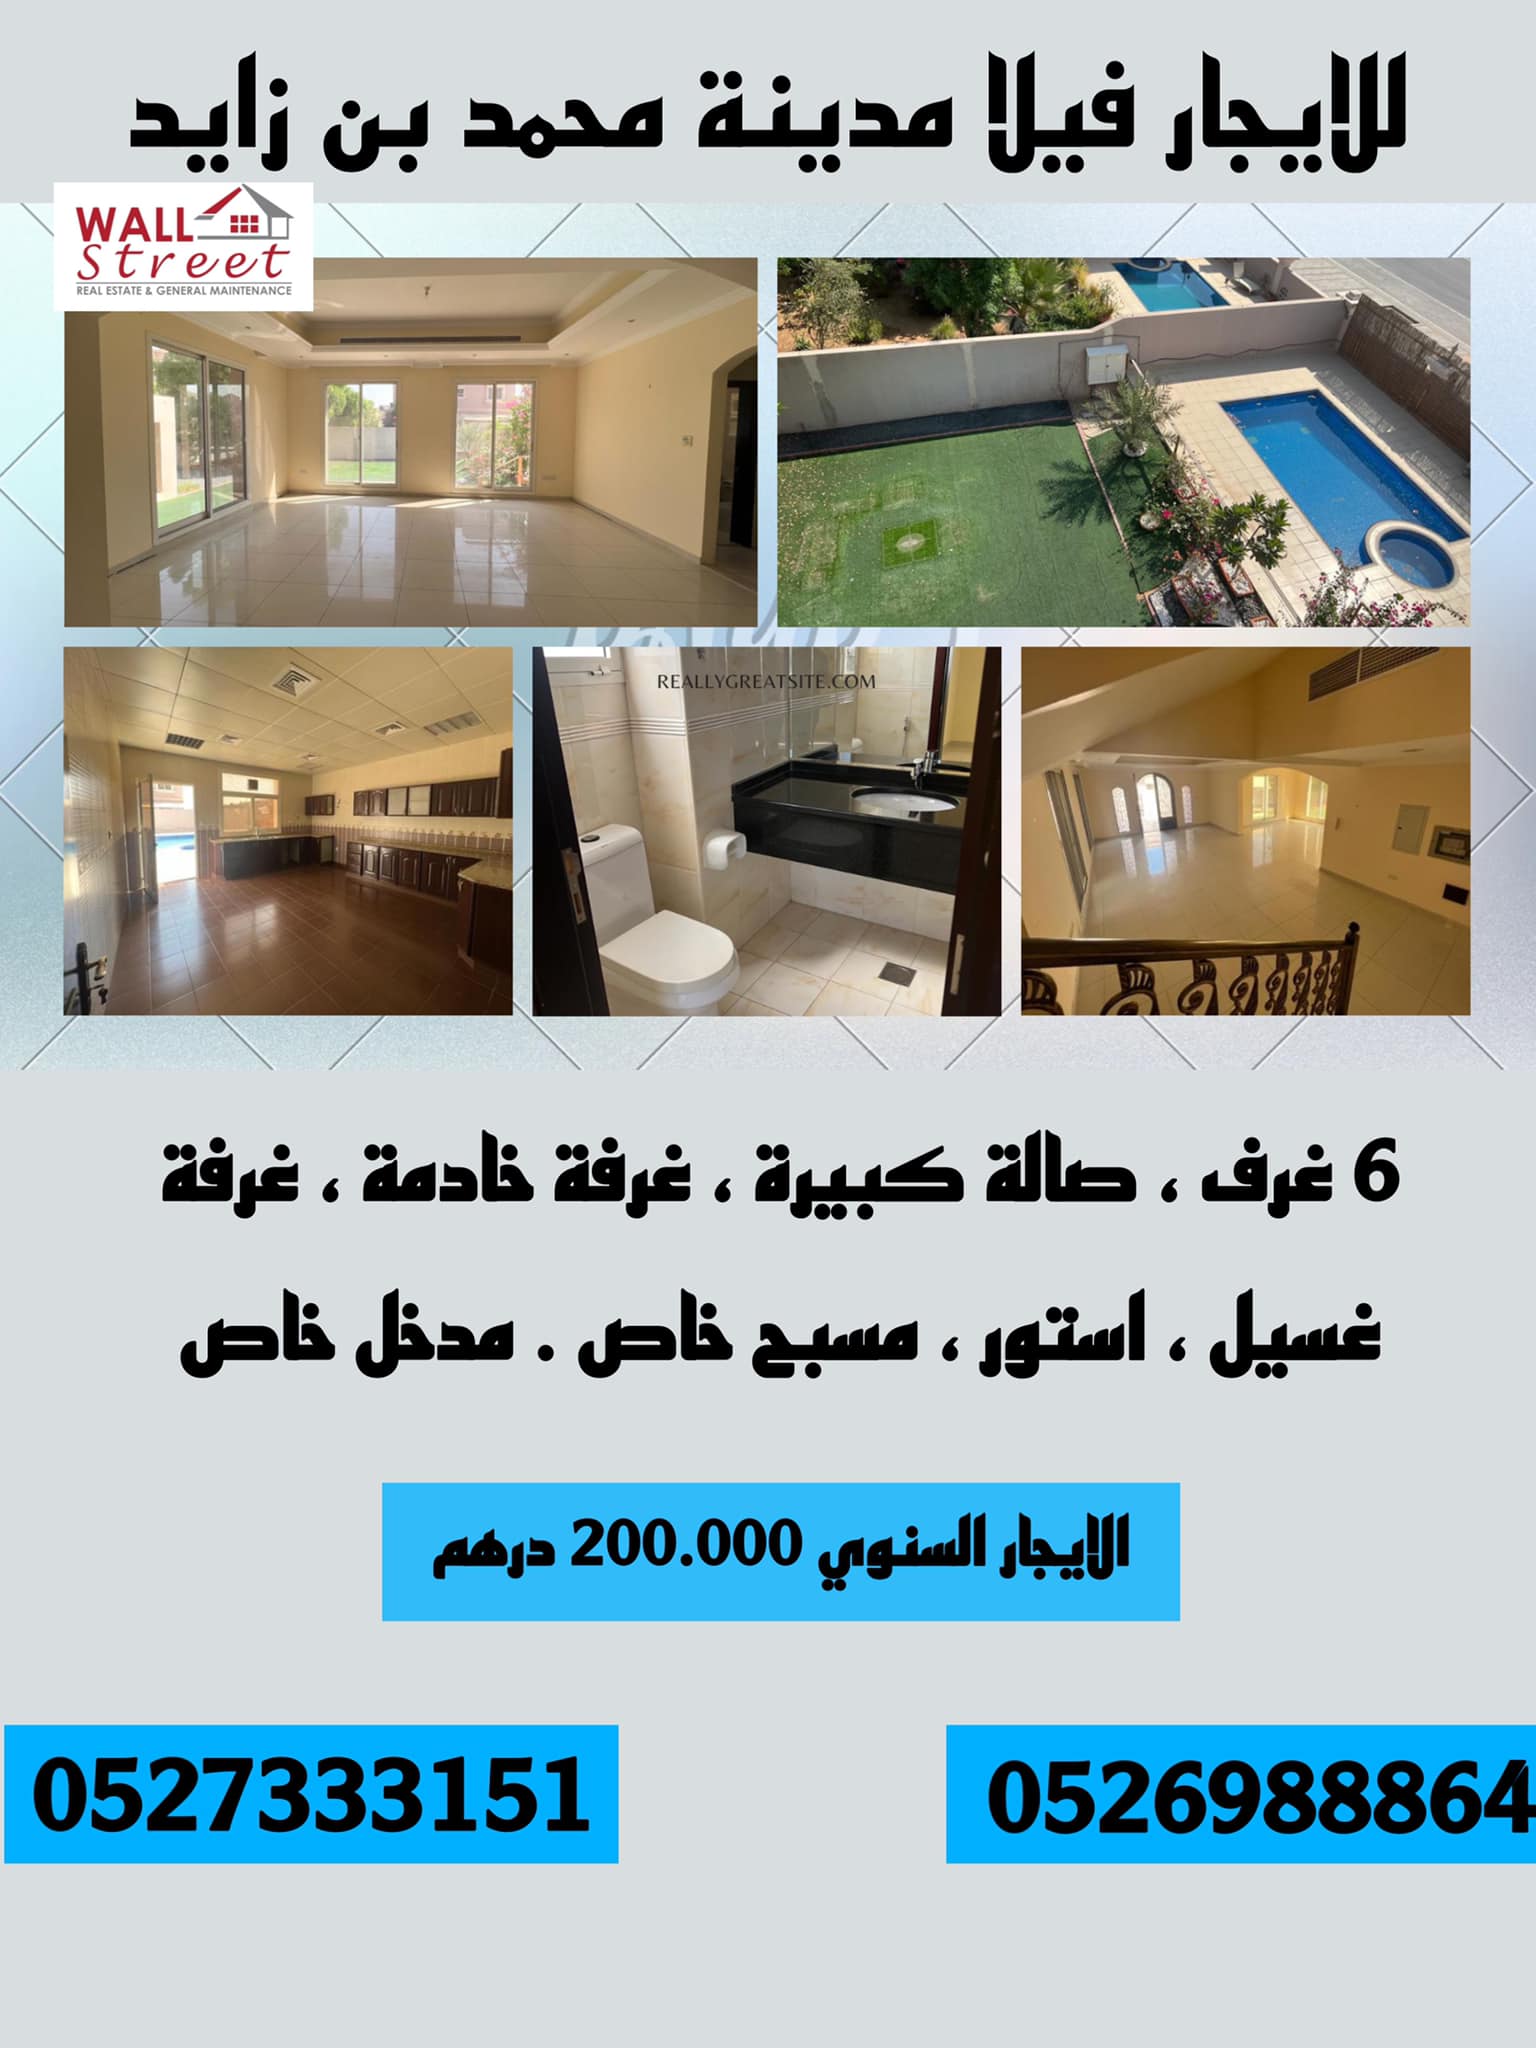 فيلا للإيجار - أبوظبي - مدينة خليفة - حوض رقم 6 - تتكون من - 5 غرف - مجلس - صالة عائلية - مطبخ رئيسي